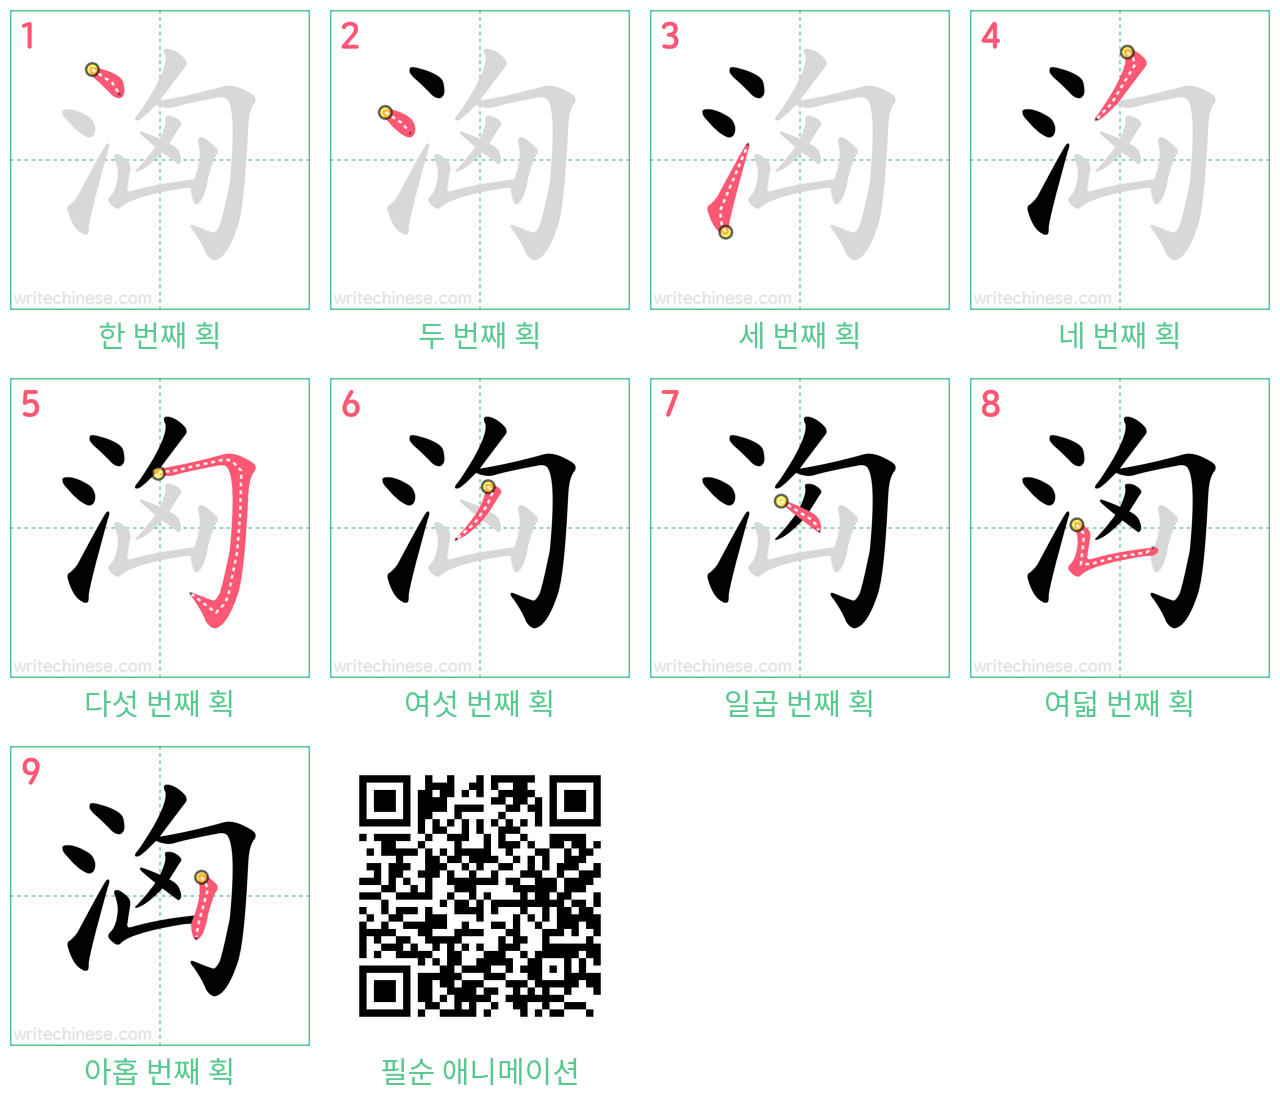 洶 step-by-step stroke order diagrams